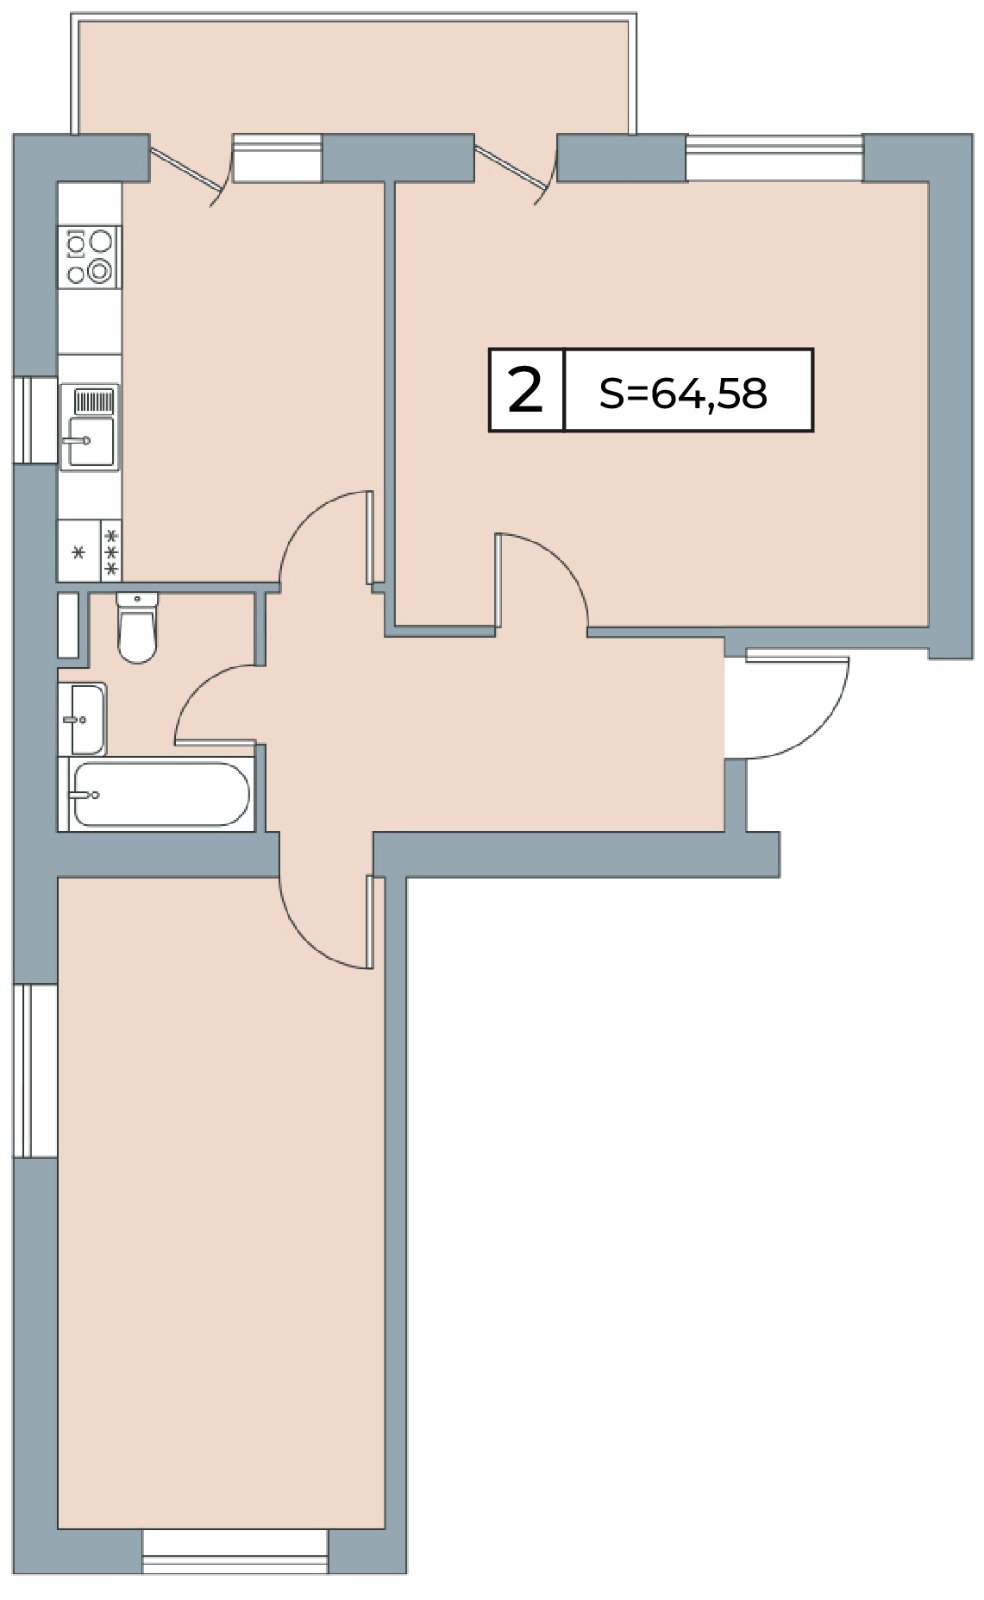 2-комнатная 64.58 м2